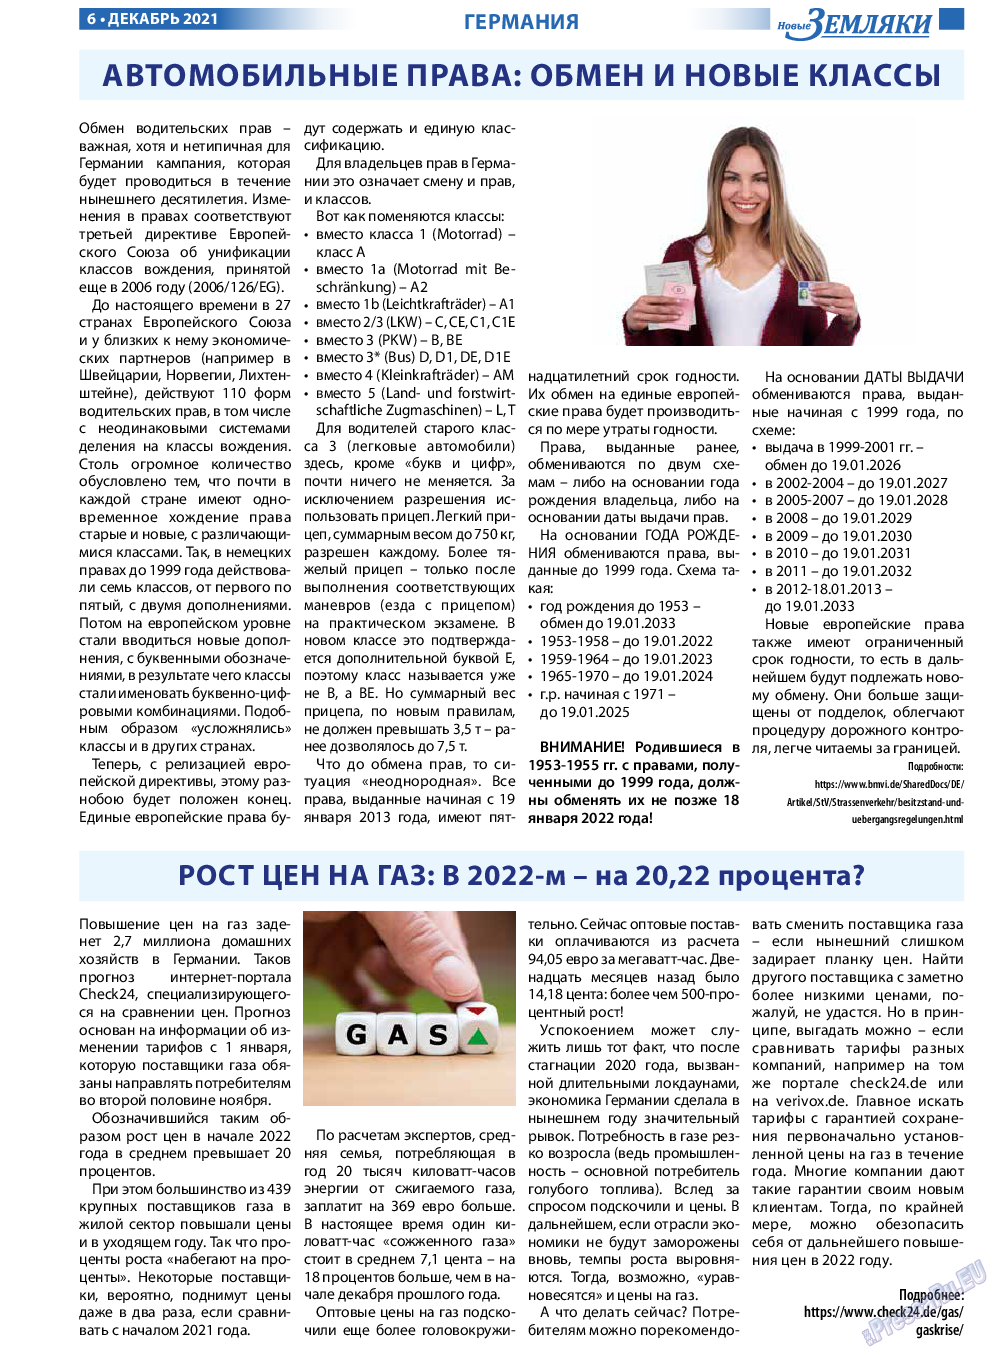 Новые Земляки, газета. 2021 №12 стр.6